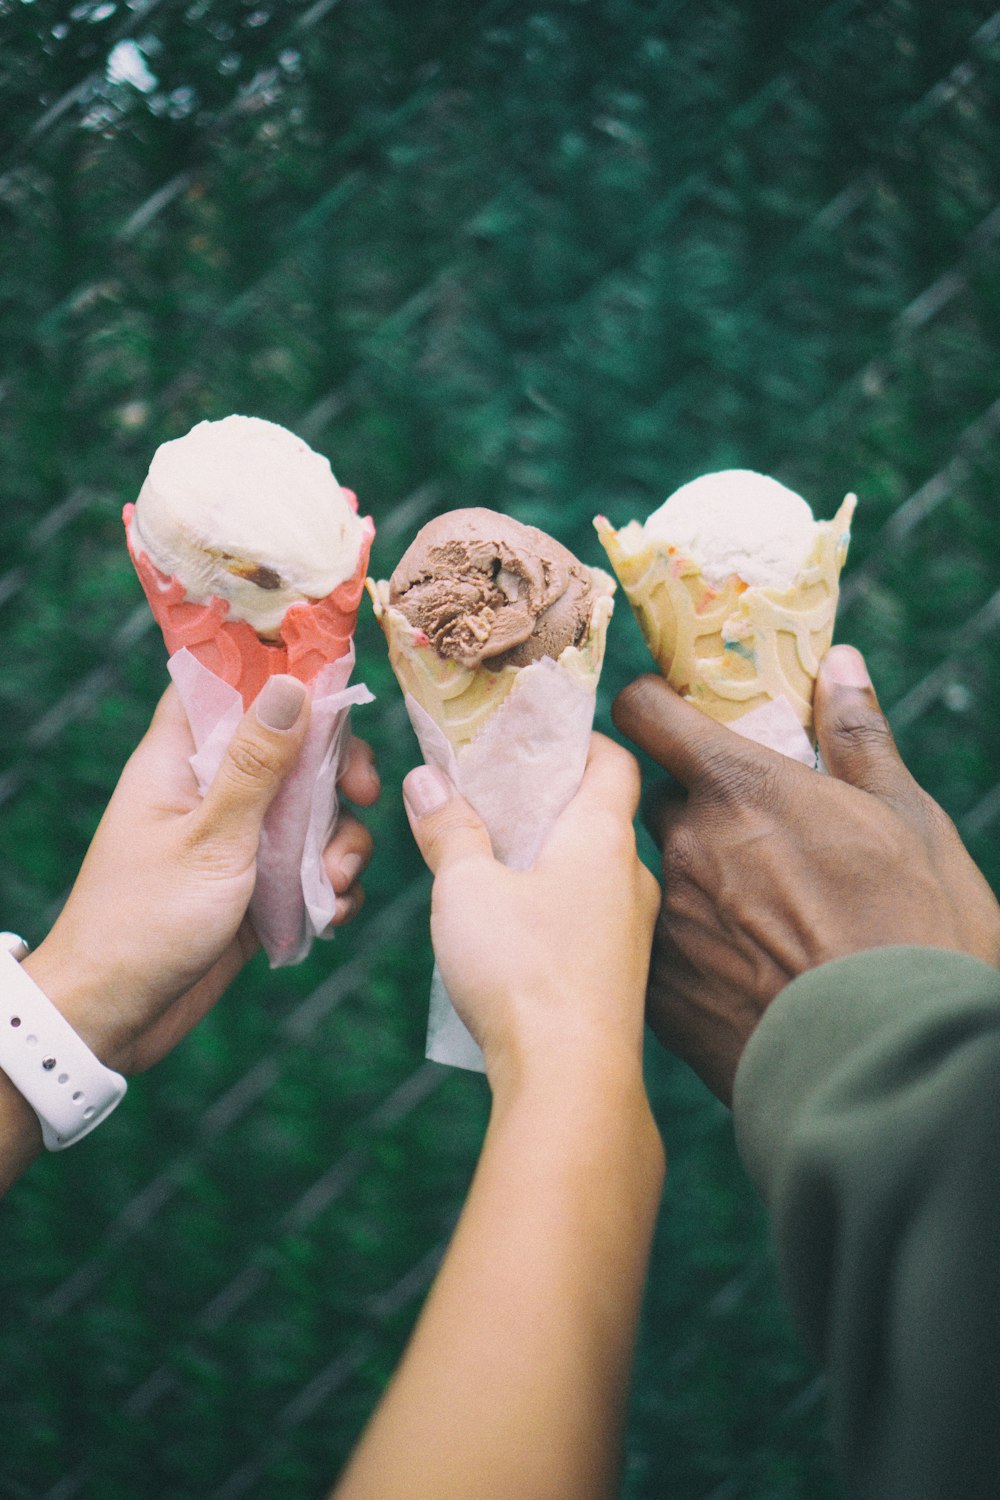 아이스크림 콘을 손에 들고 있는 세 사람